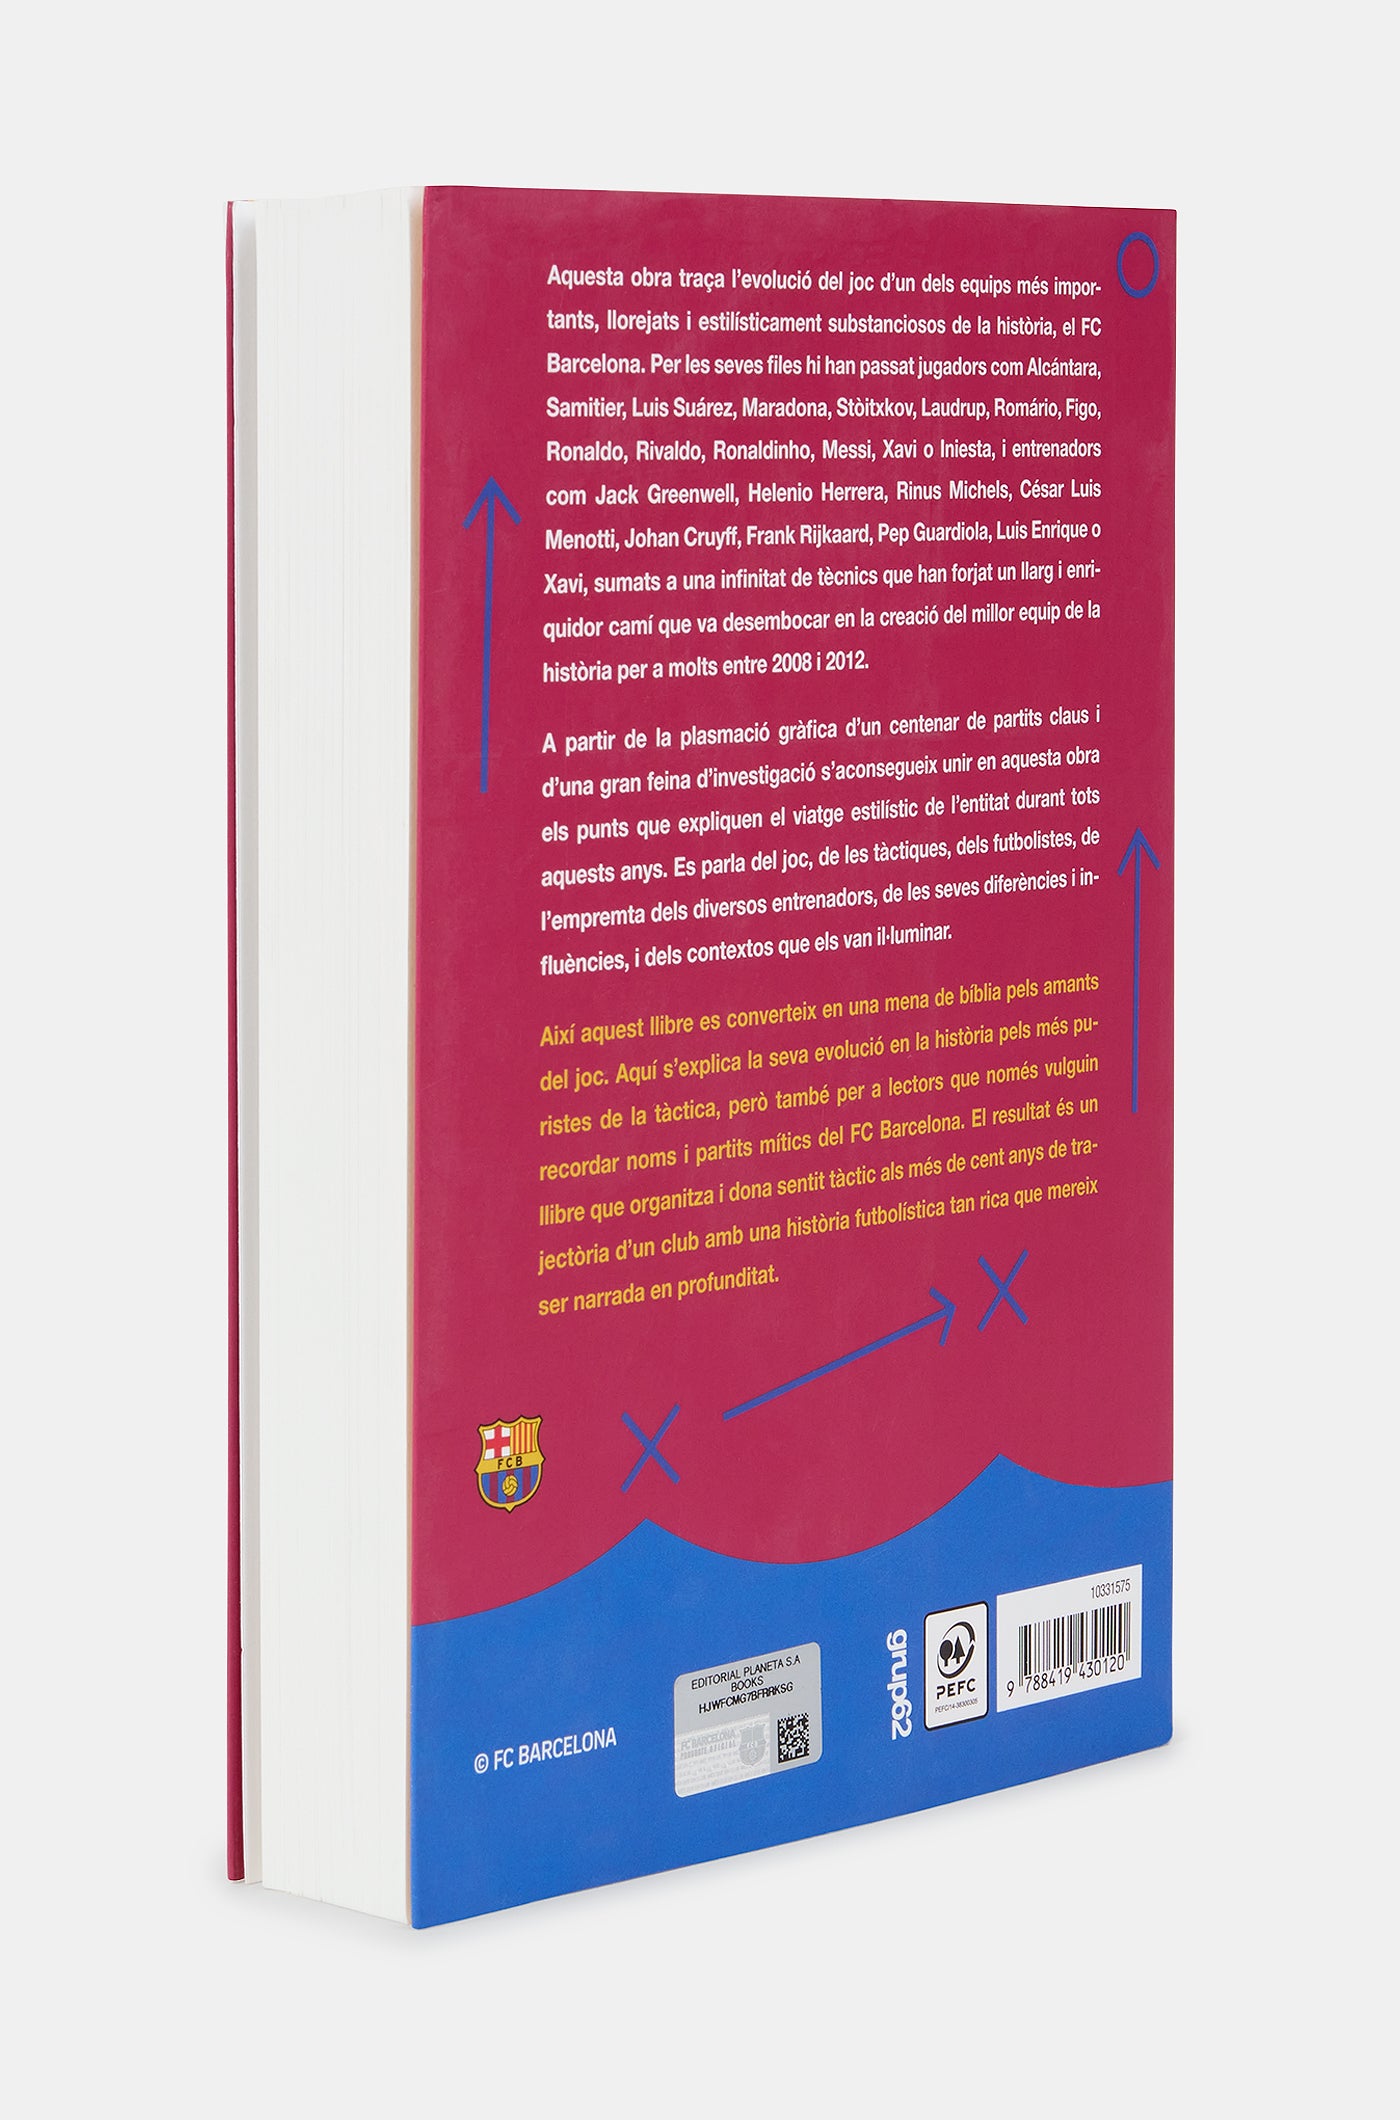 Book "L´estil del Barça"